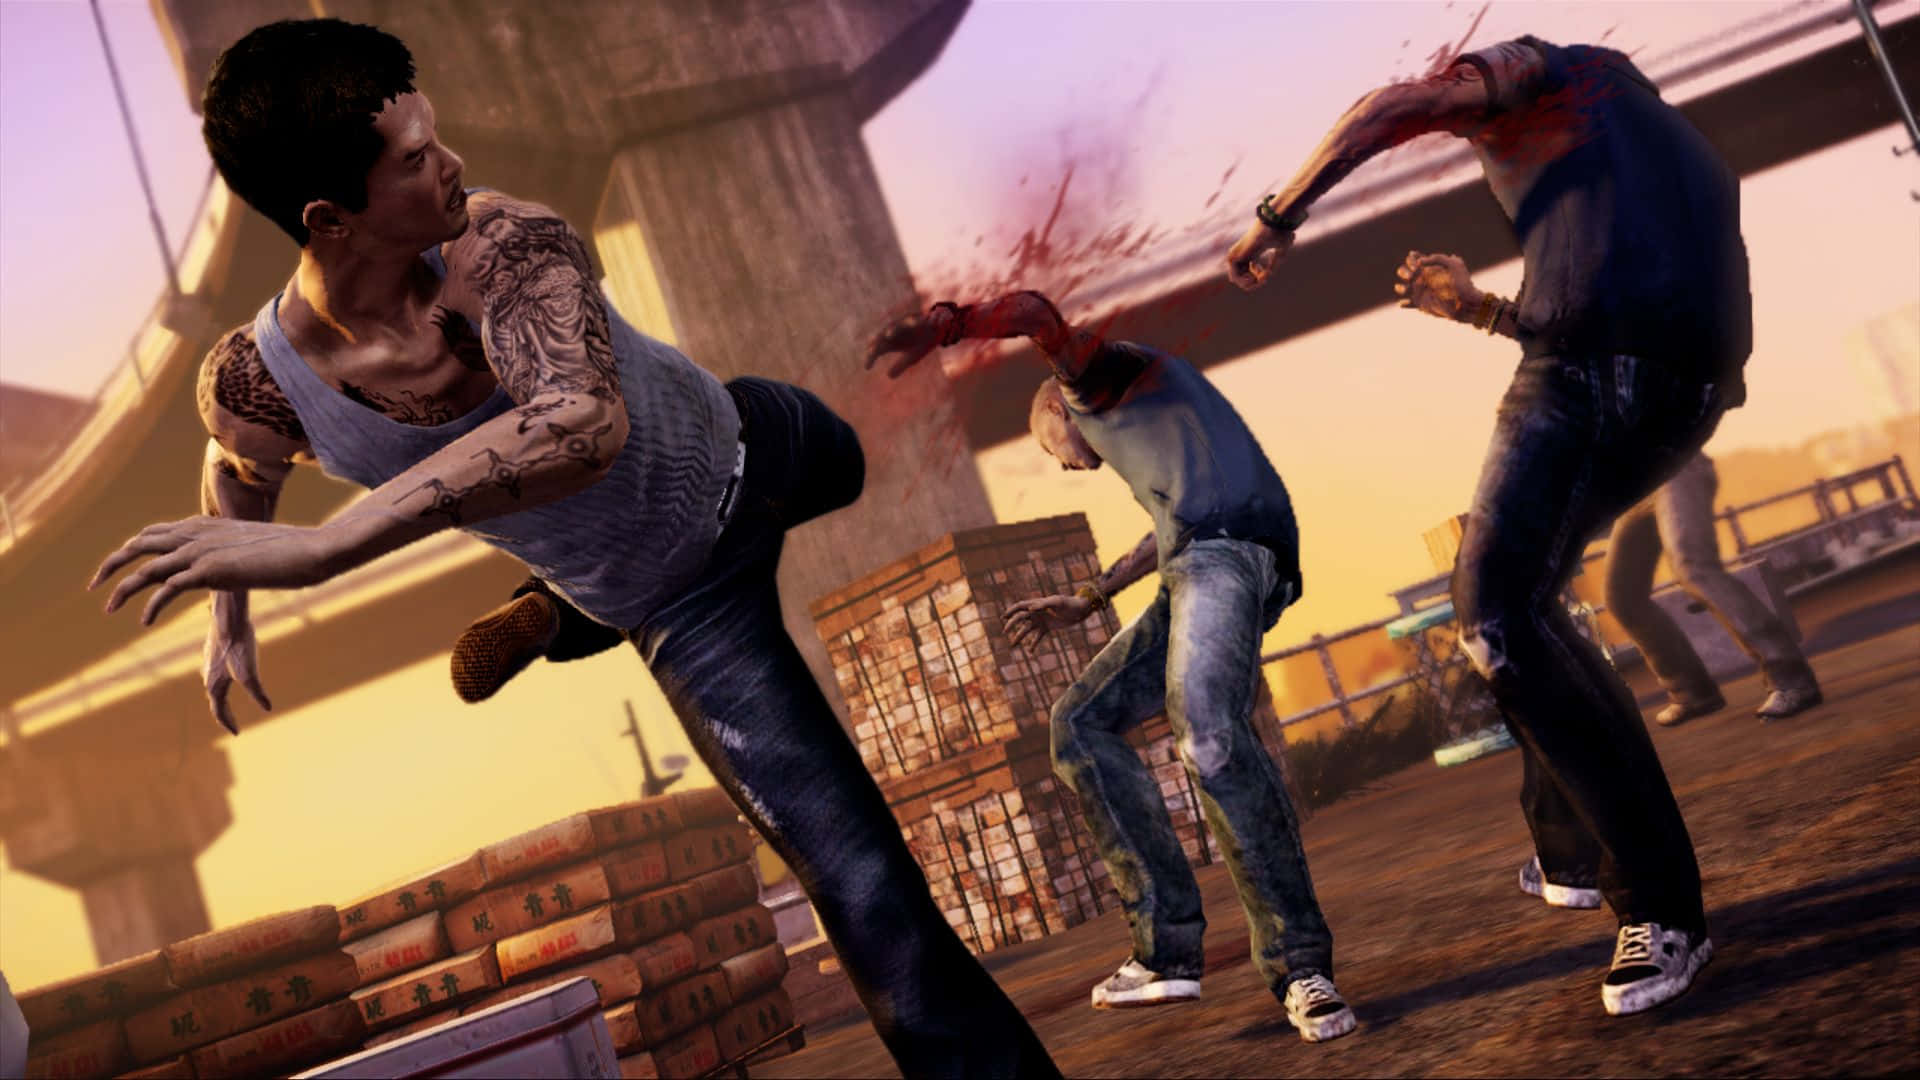 Einegruppe Von Menschen Kämpft In Einem Videospiel. Wallpaper